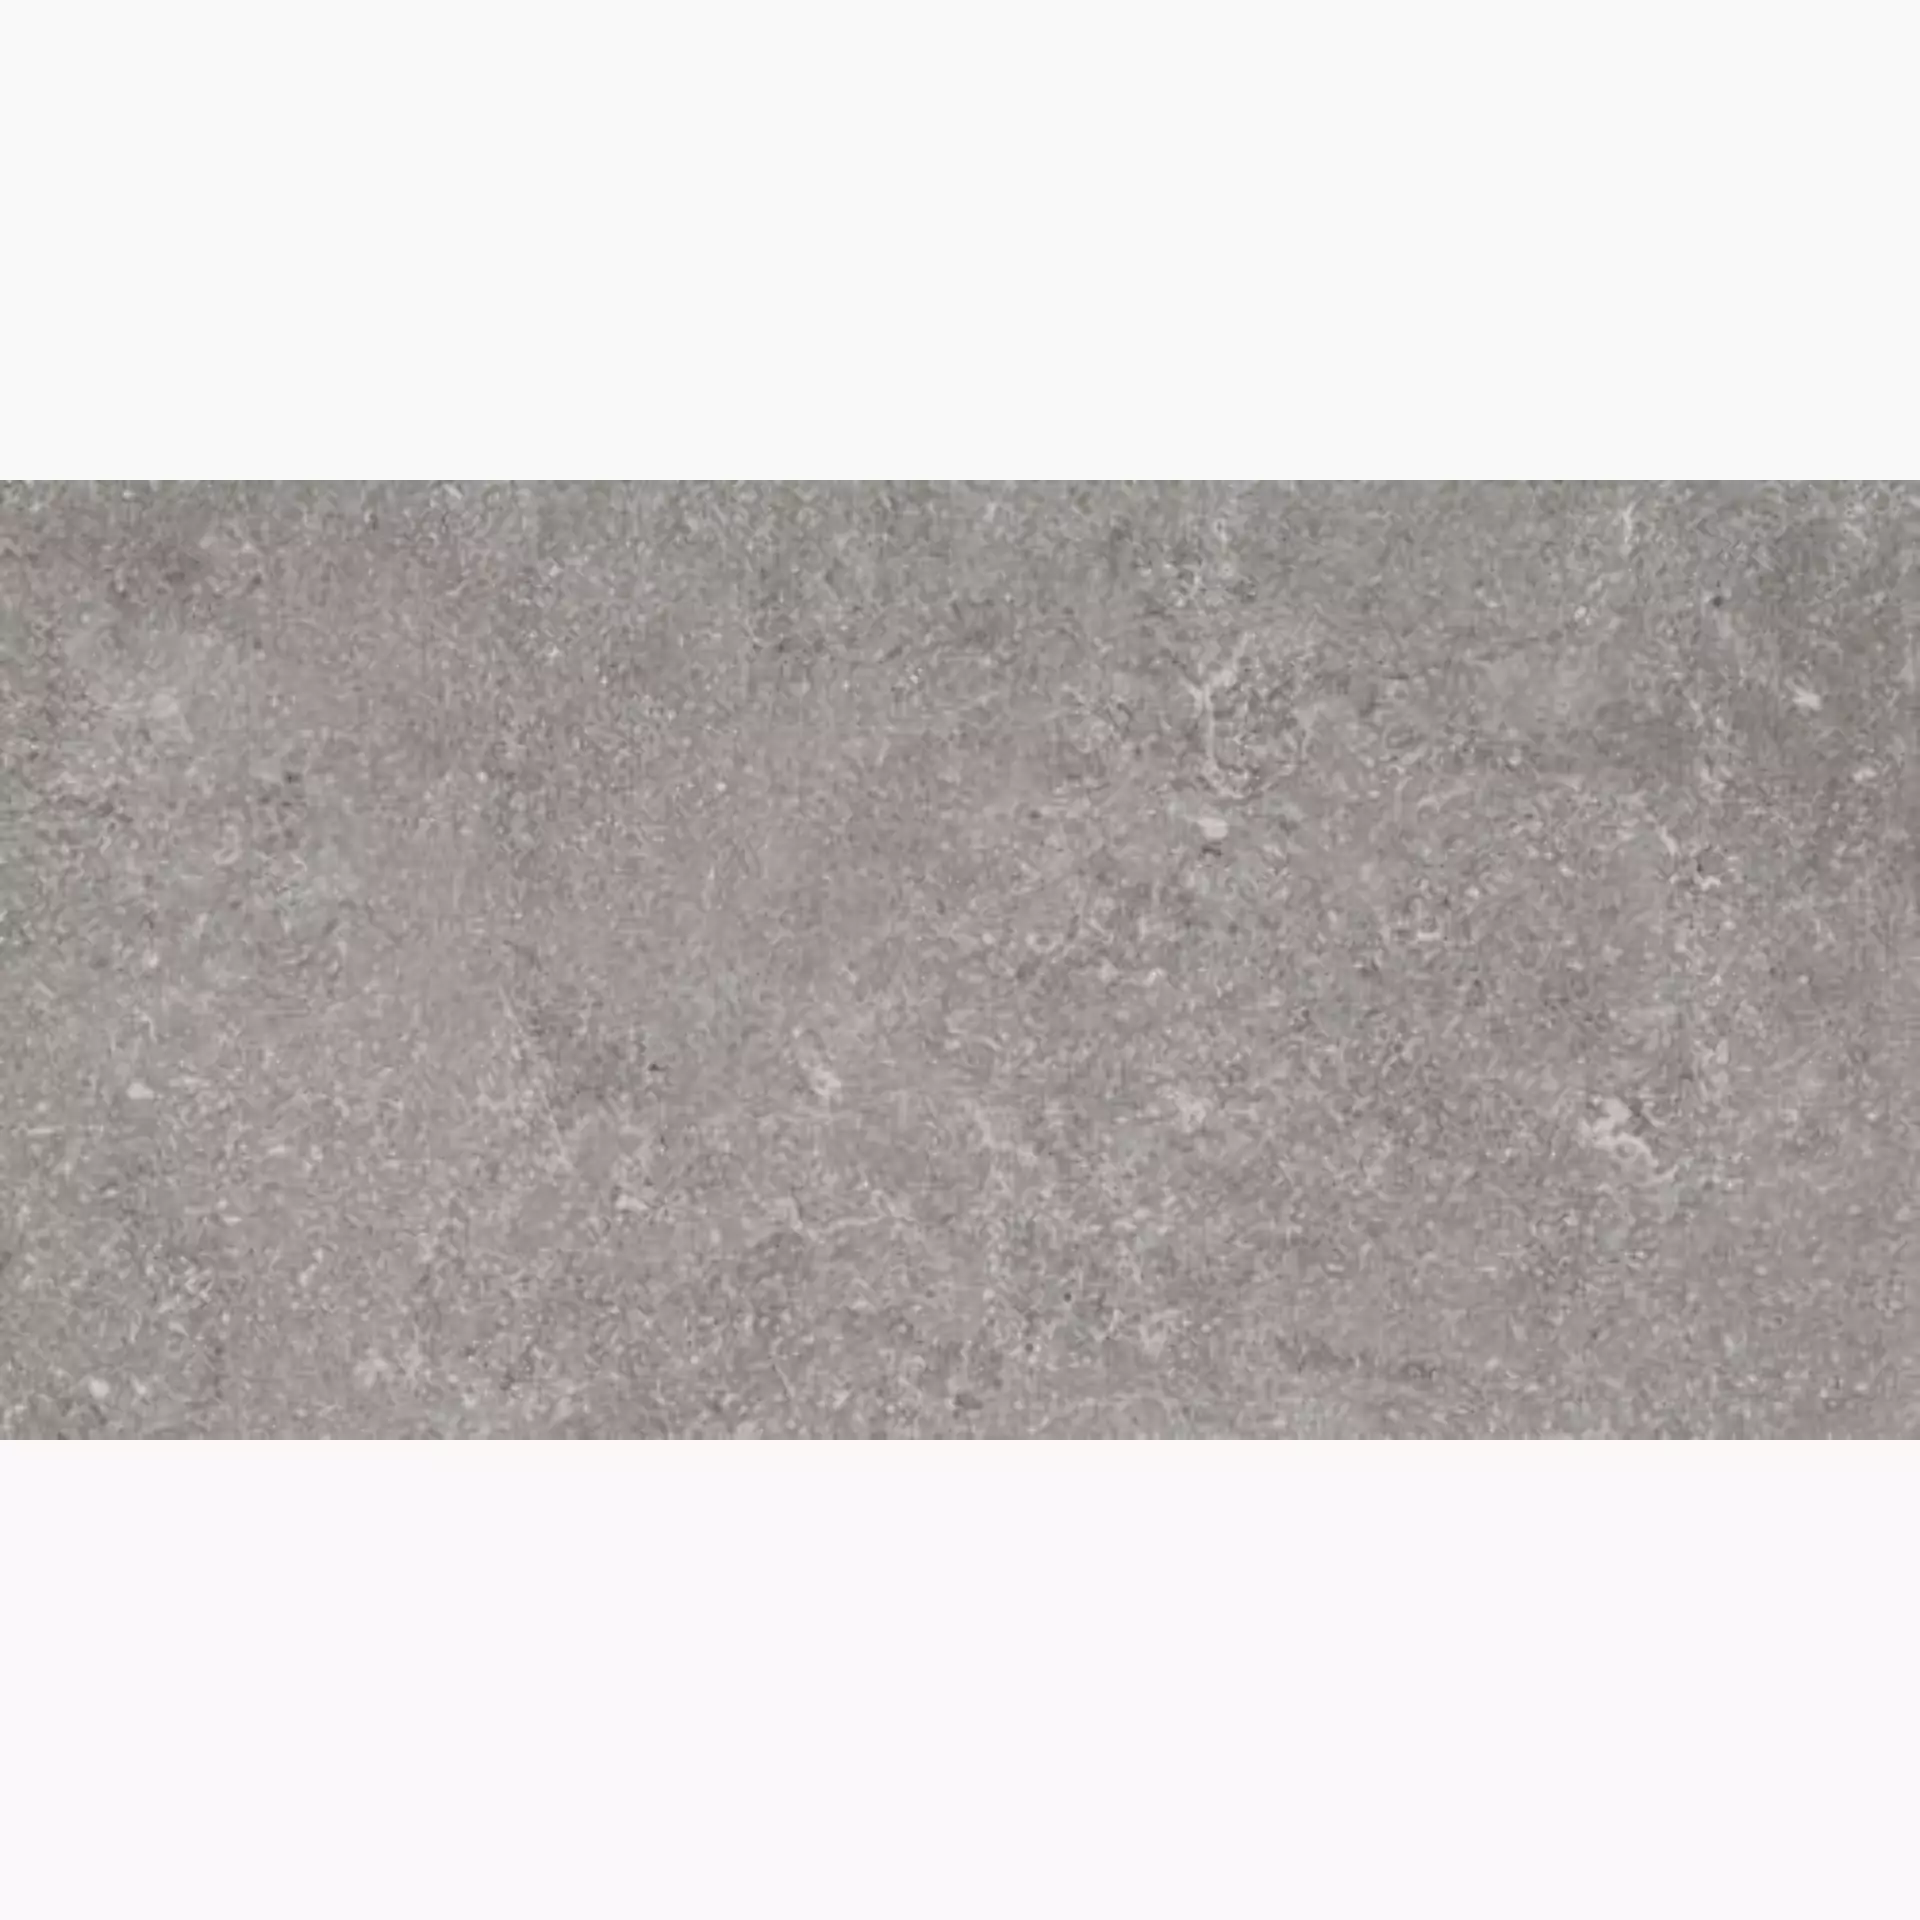 Ragno Realstone Lunar Silver Naturale – Matt R7CG naturale – matt 30x60cm rectified 9,5mm